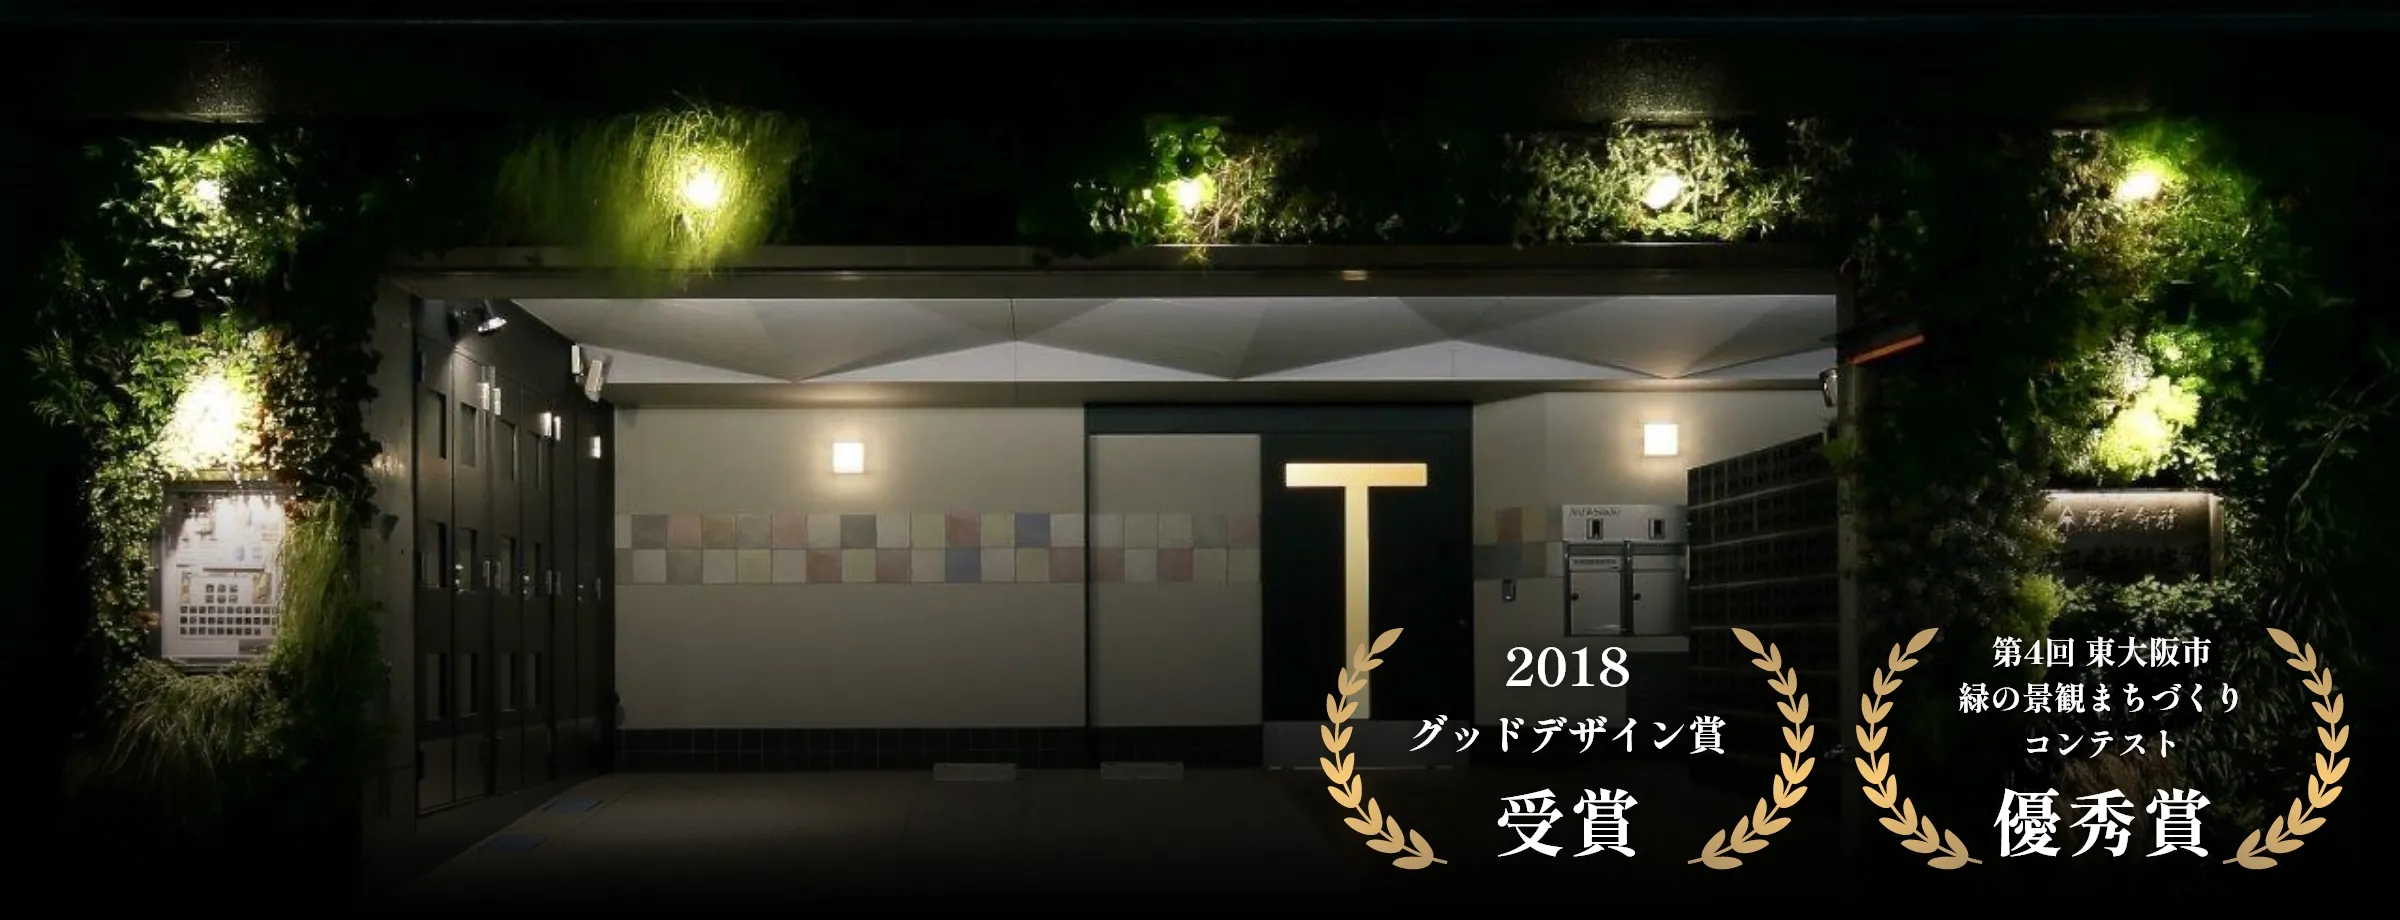 「2018 グッドデザイン賞 受賞」「第4回 東大阪市 緑の景観まちづくりコンテスト 優秀賞」